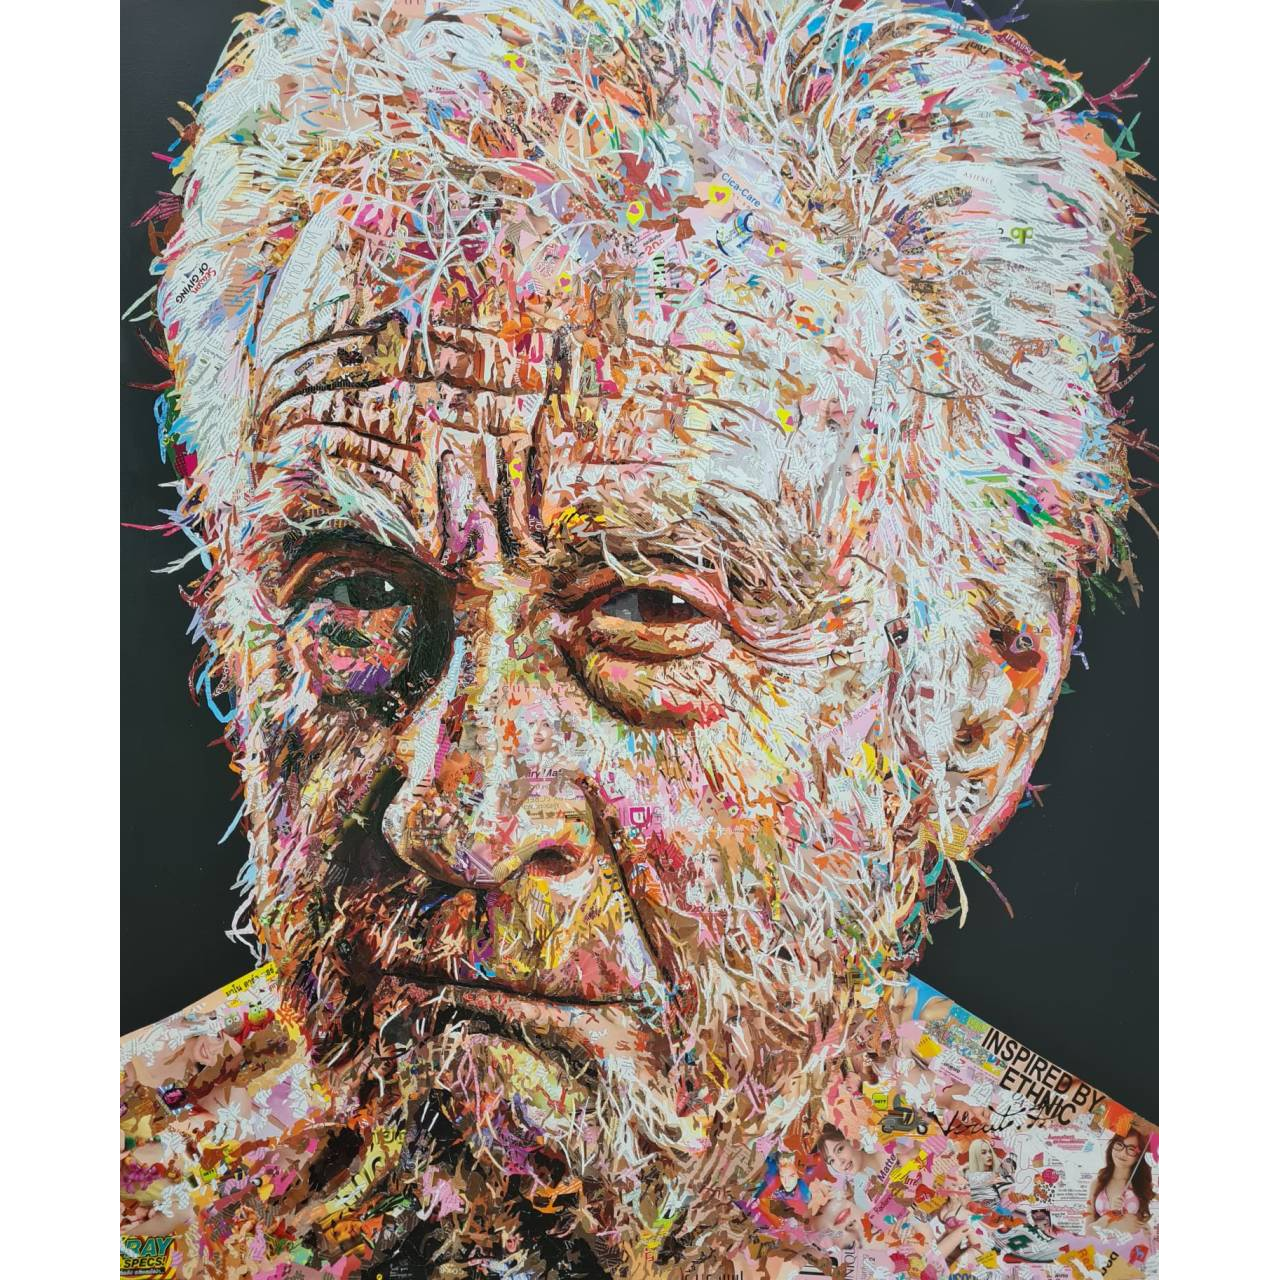 Virut PANCHABUSE, Old man, Collage sur toile, 180 x 150 cm